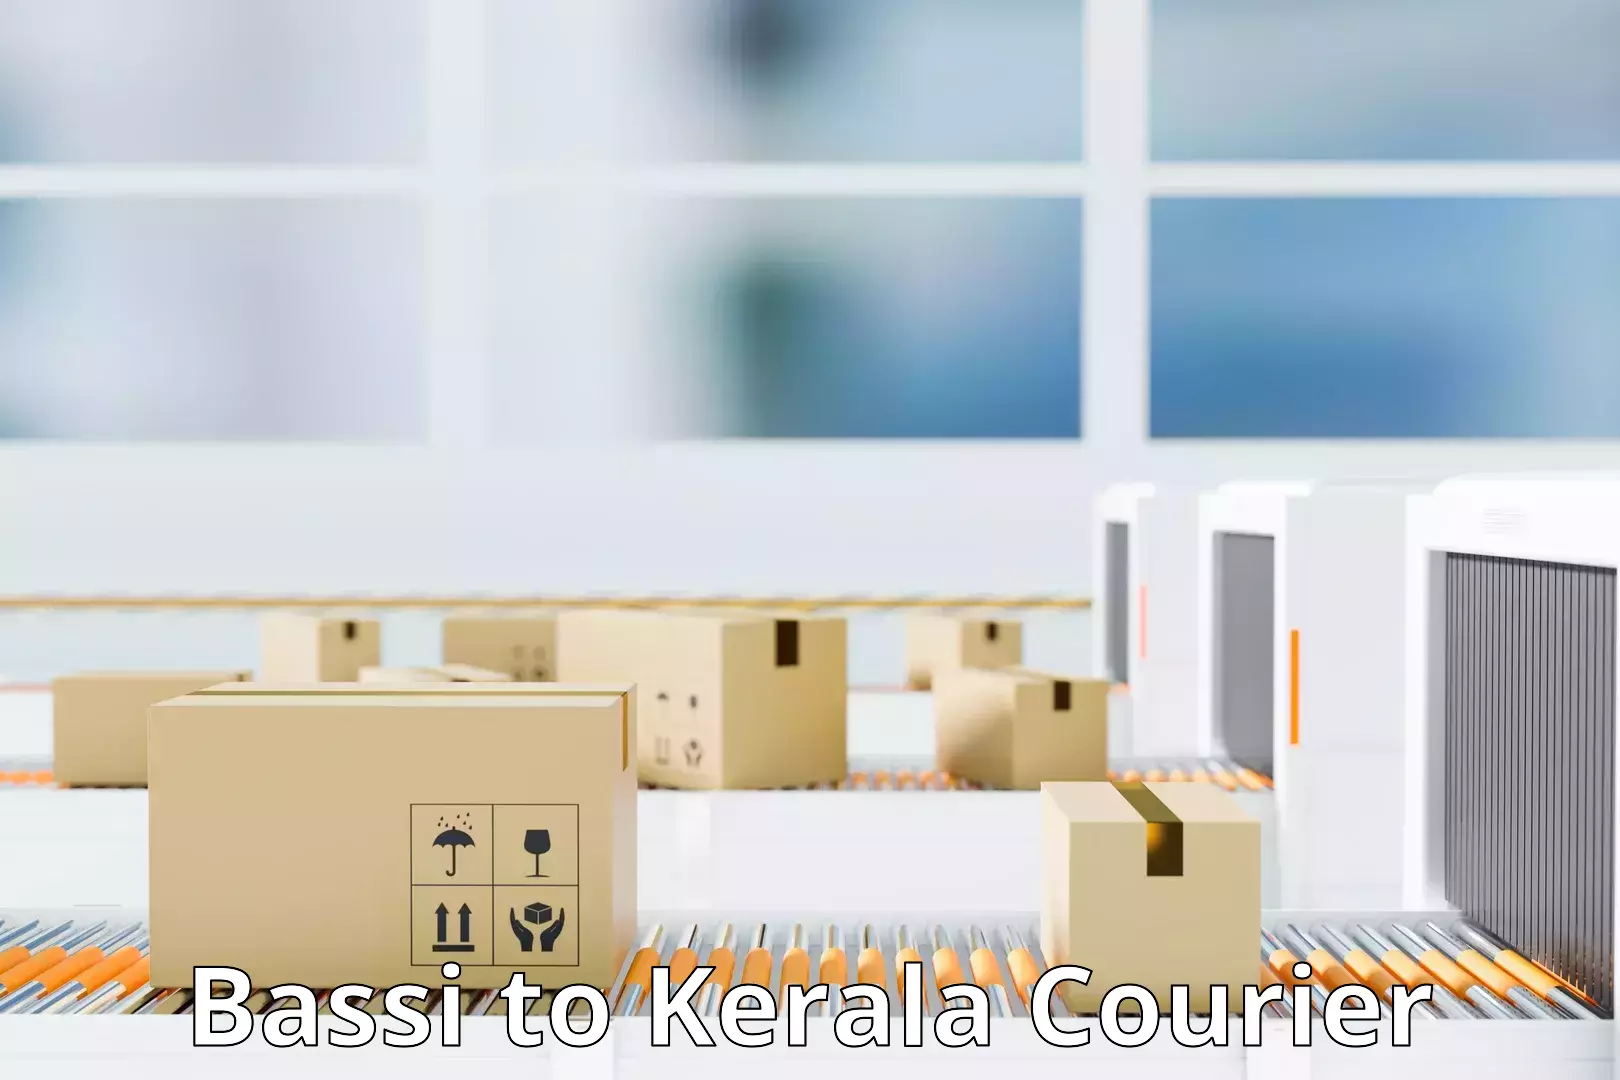 Comprehensive logistics Bassi to Kerala